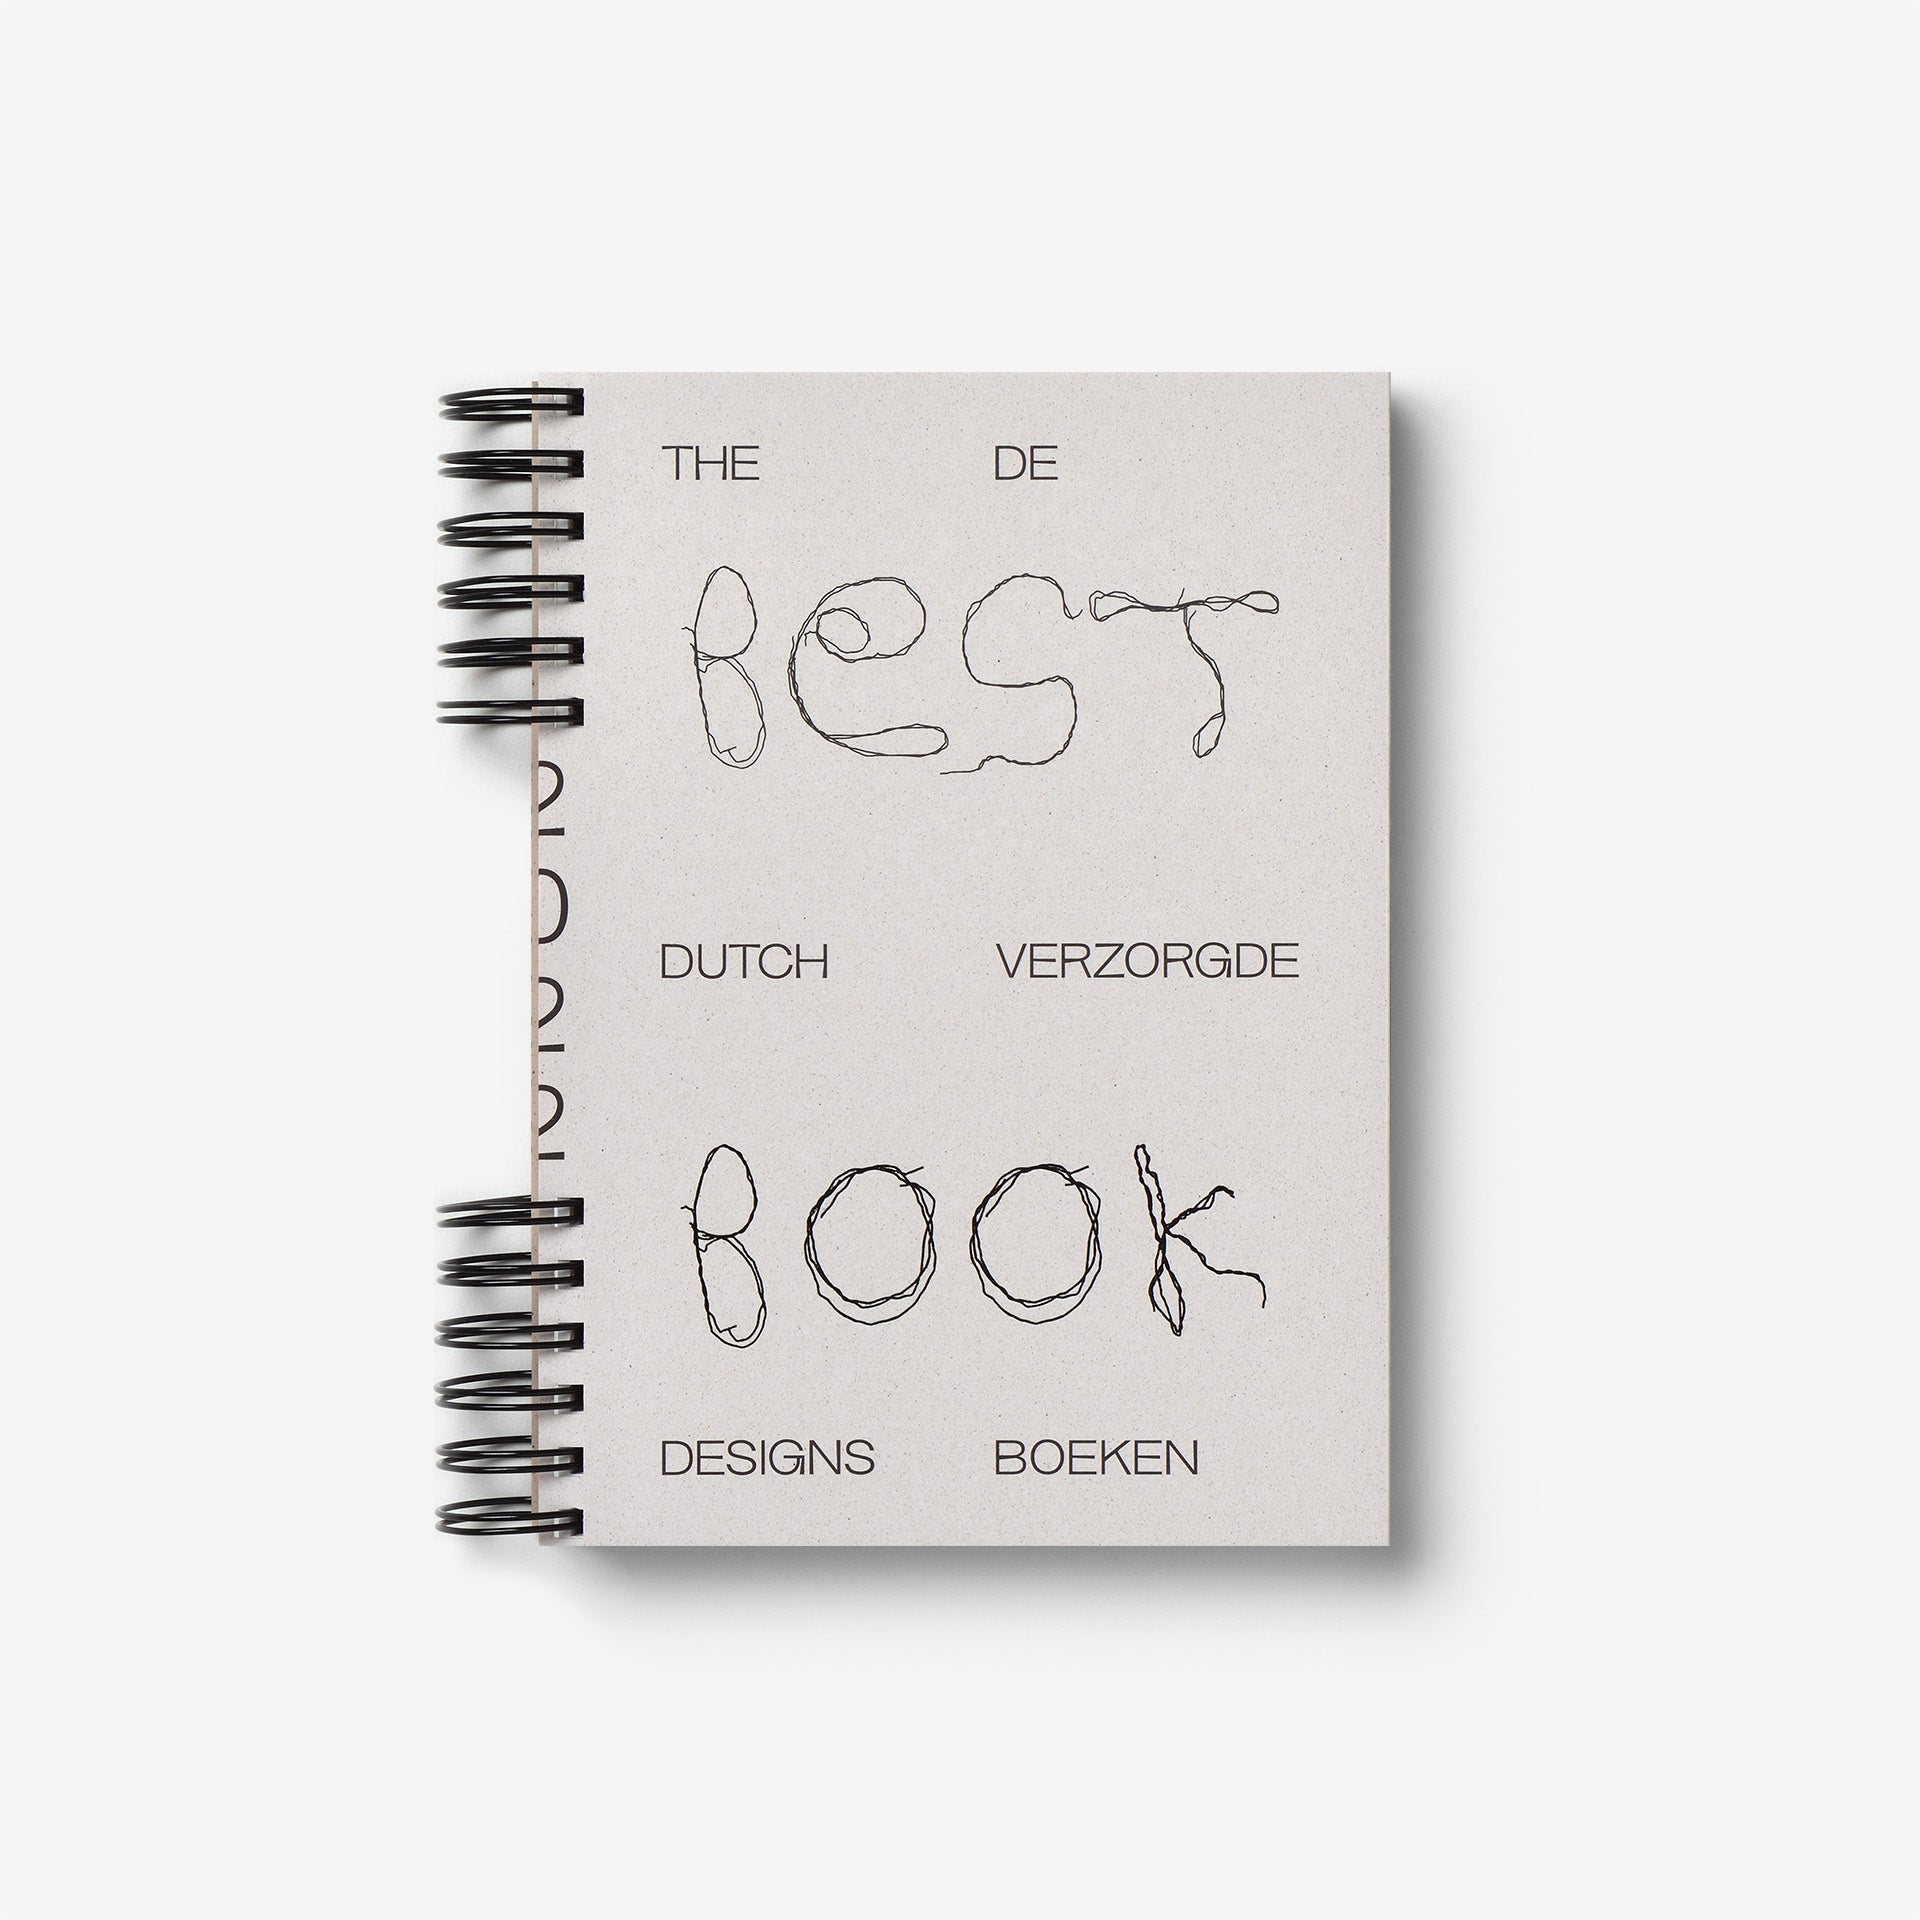 オランダのブックデザインアワード | North East